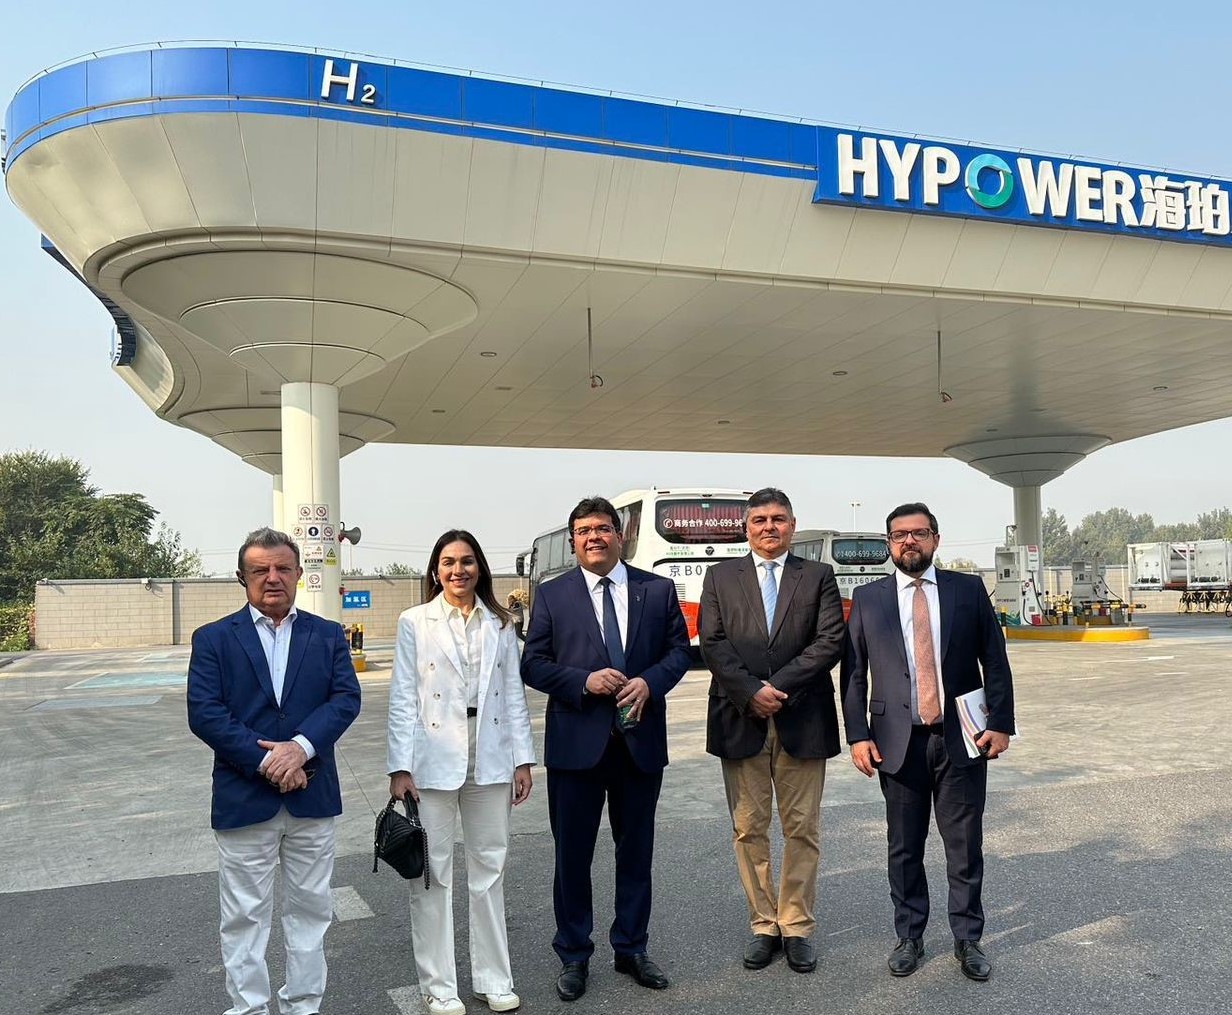 Em busca de investidores, governador visita zona que abriga 170 empresas da área do Hidrogênio